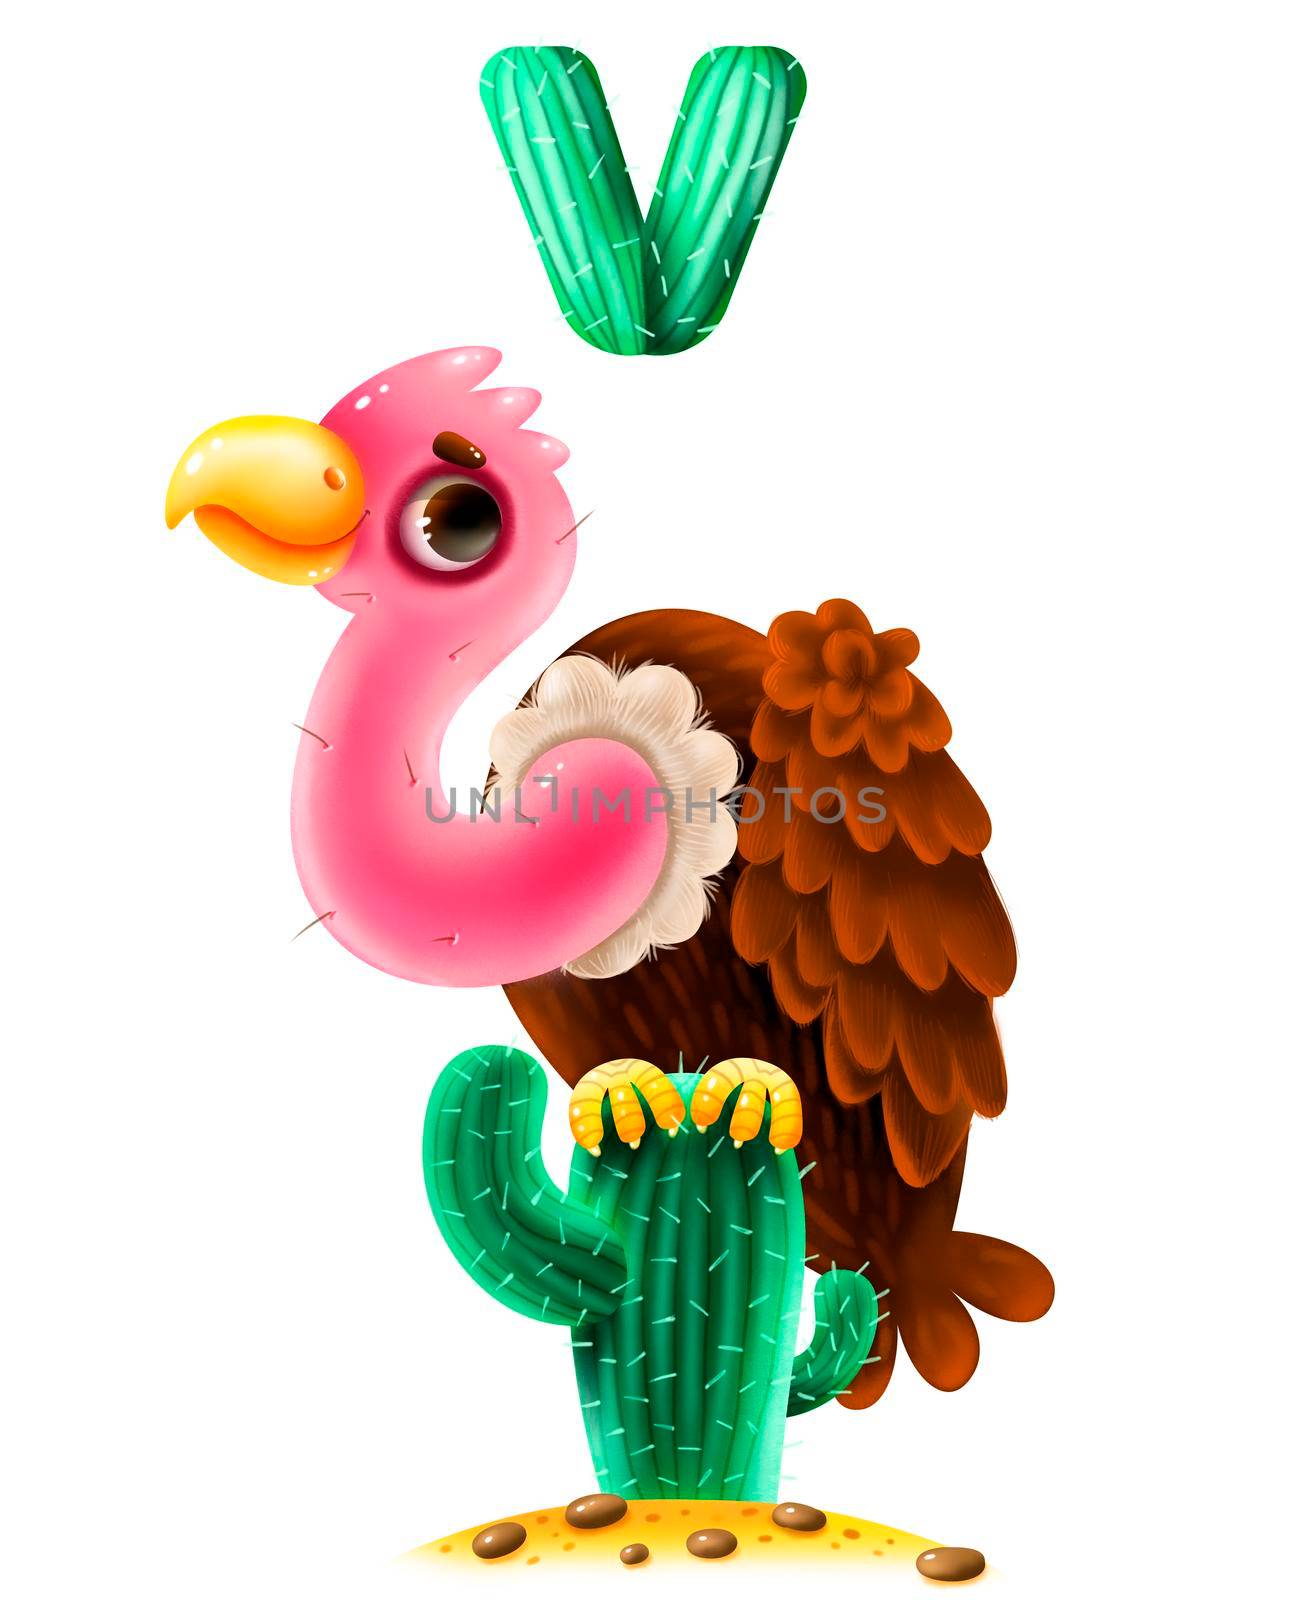 Animal alphabet for the kids: V for the Vulture. Cartoon illustration by studiodav